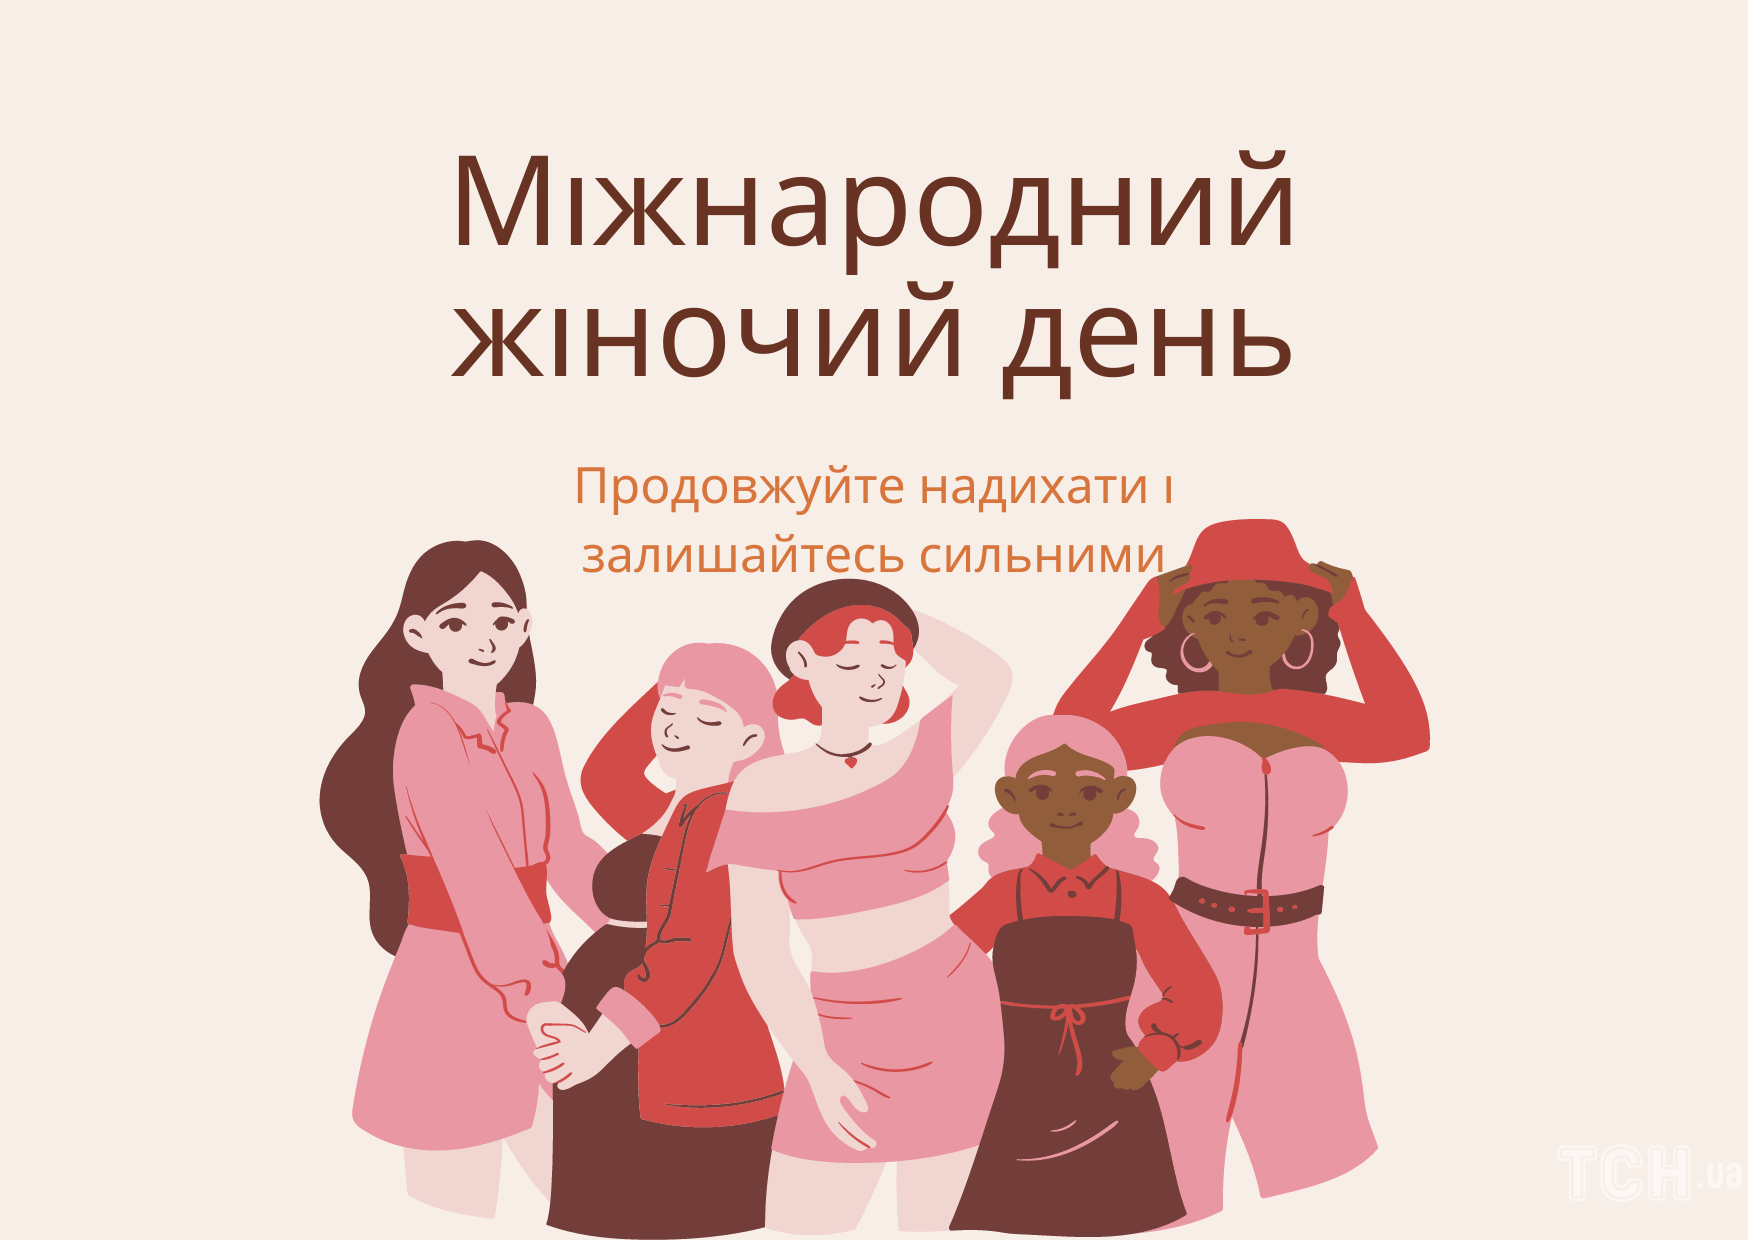 З 8 Березня 2023 року: картинки українською, привітання в прозі та віршах до Міжнародного жіночого дня 5